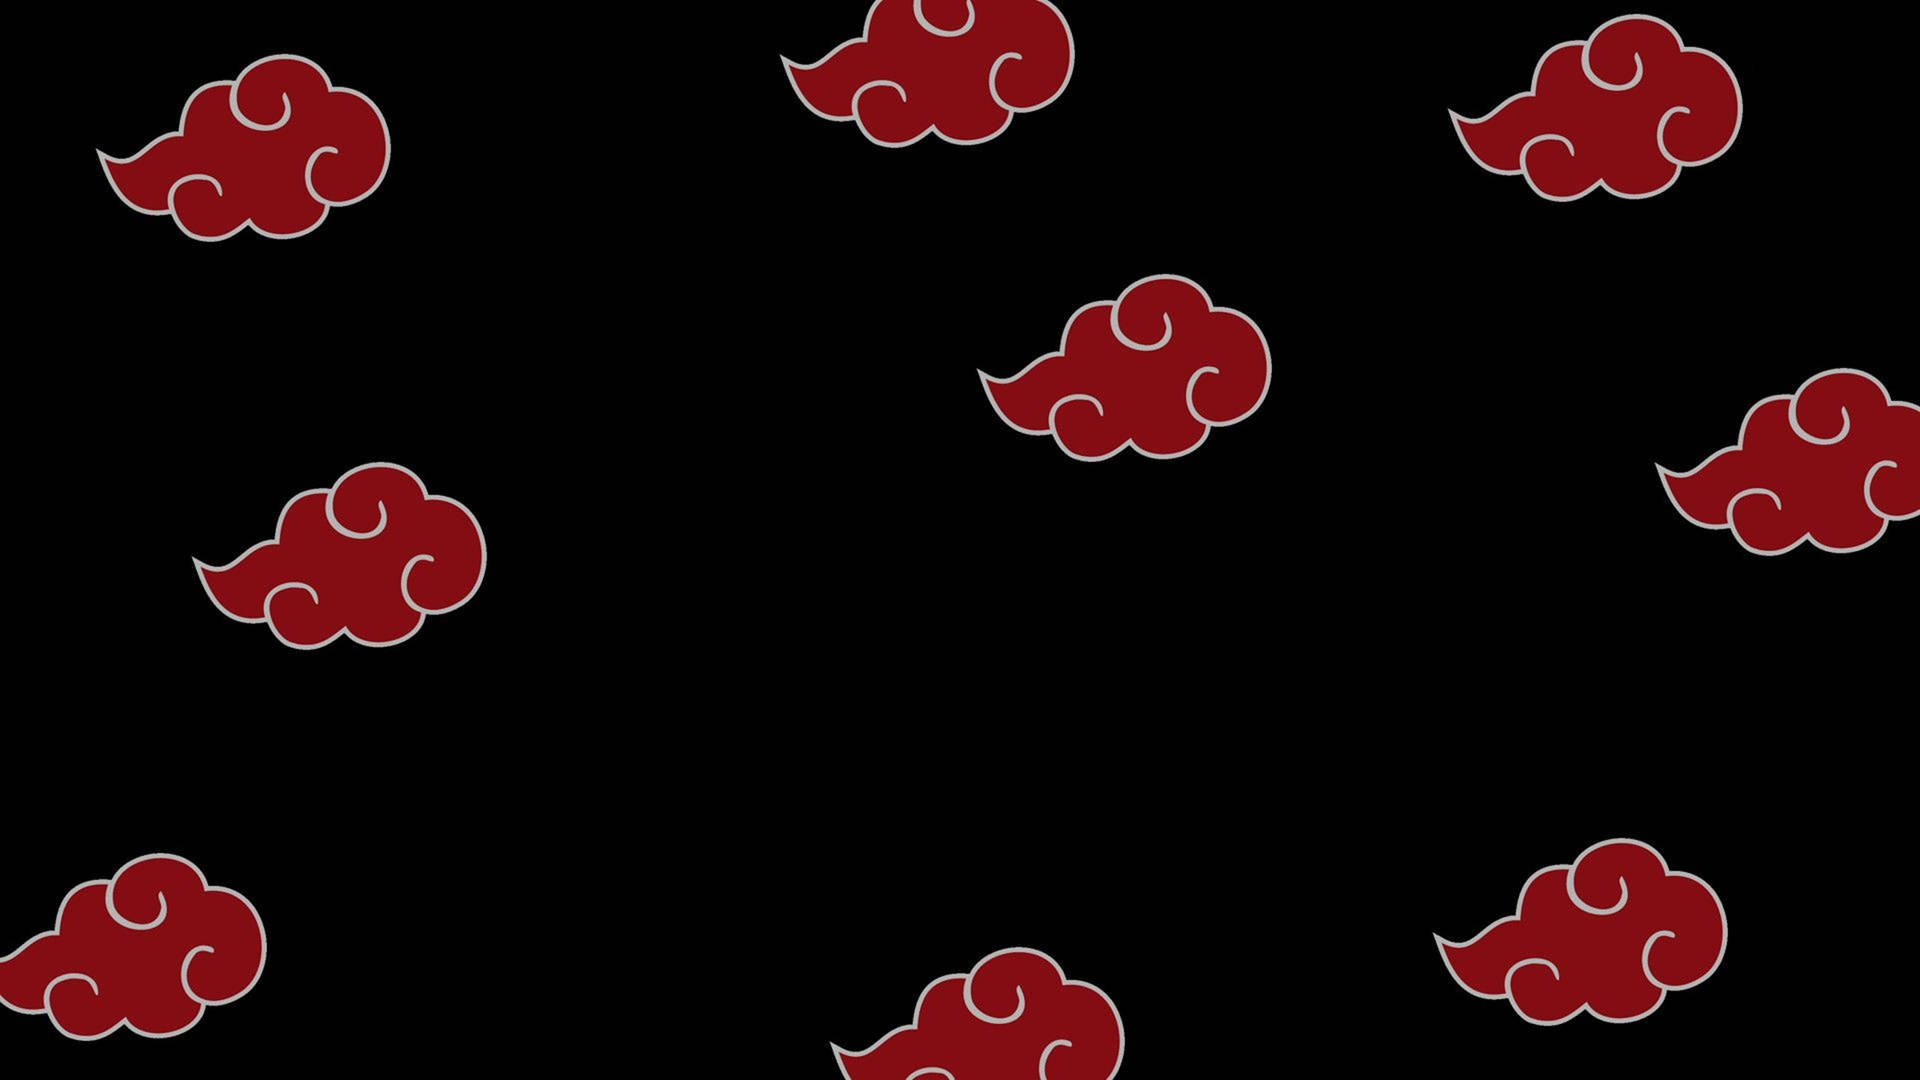 Akatsuki Logo Red Cloud Pattern Wallpaper